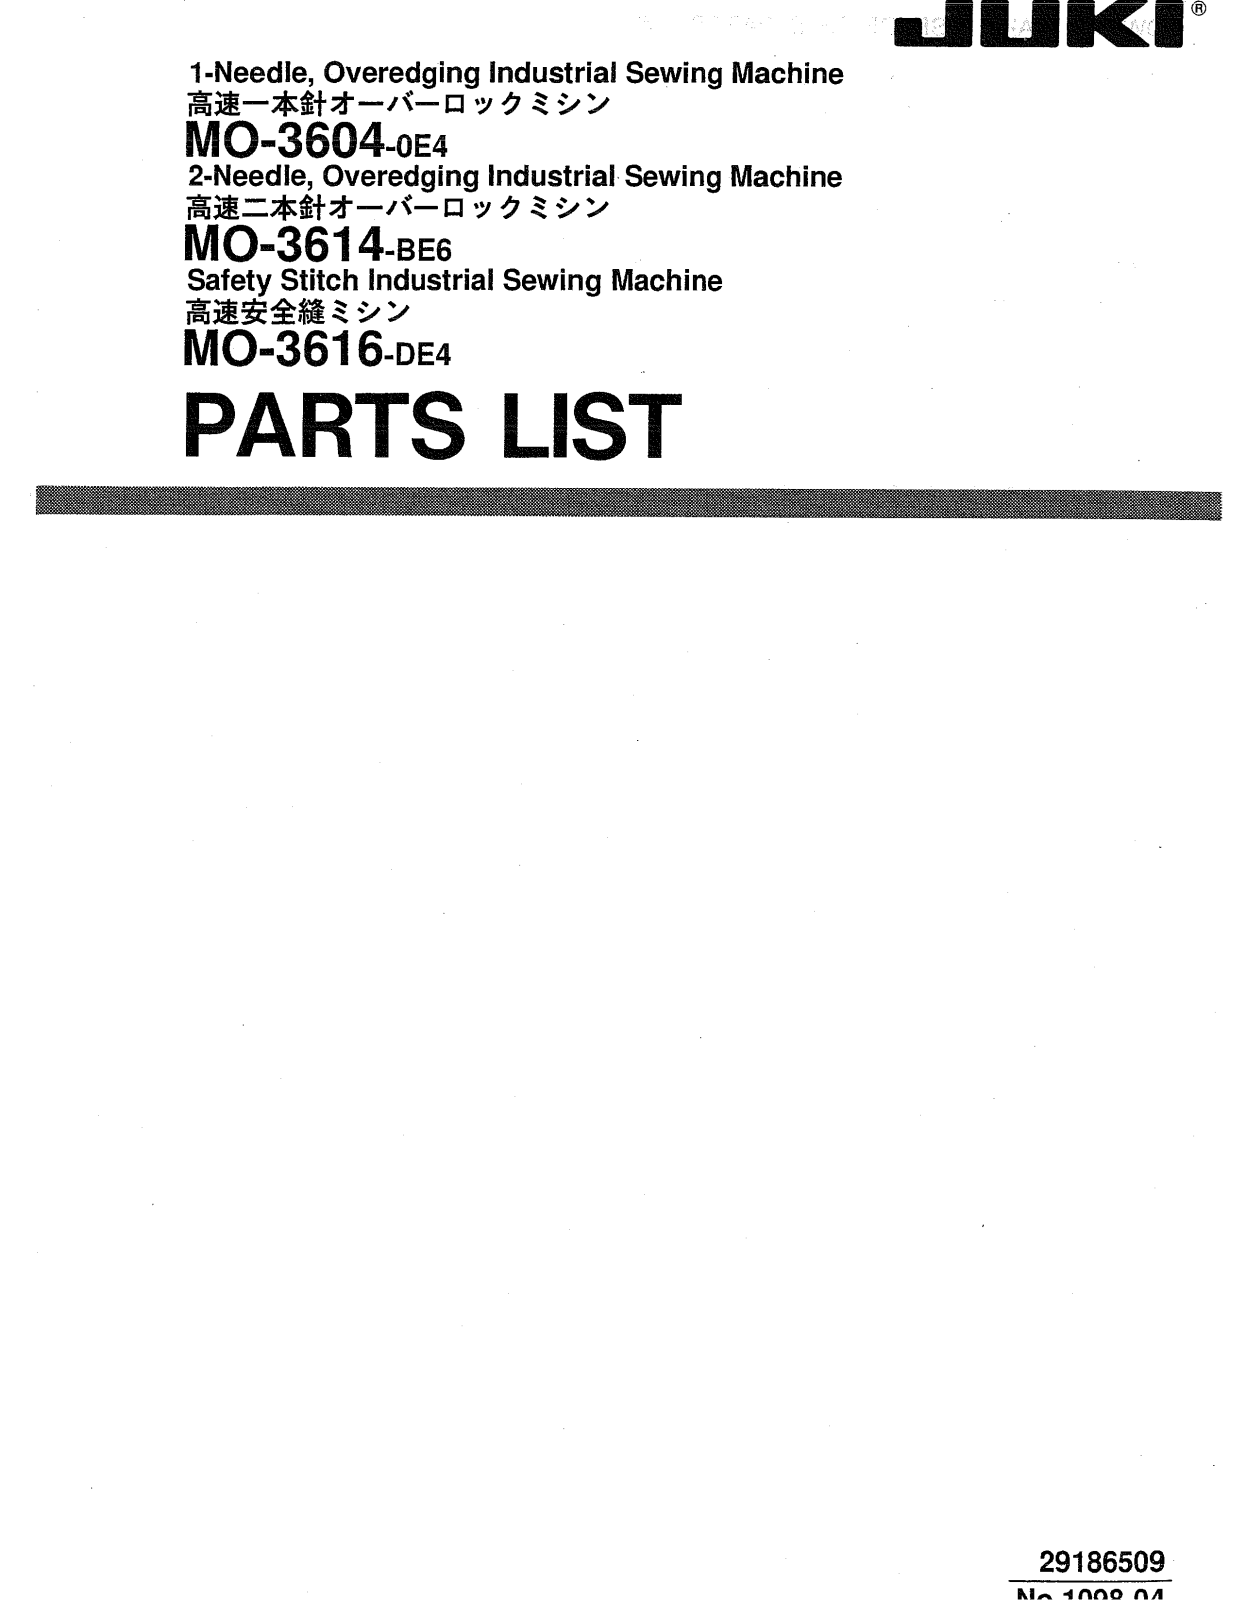 Juki MO-3604-OE4, MO-3614-OE4, MO-3616-DE4 Parts List